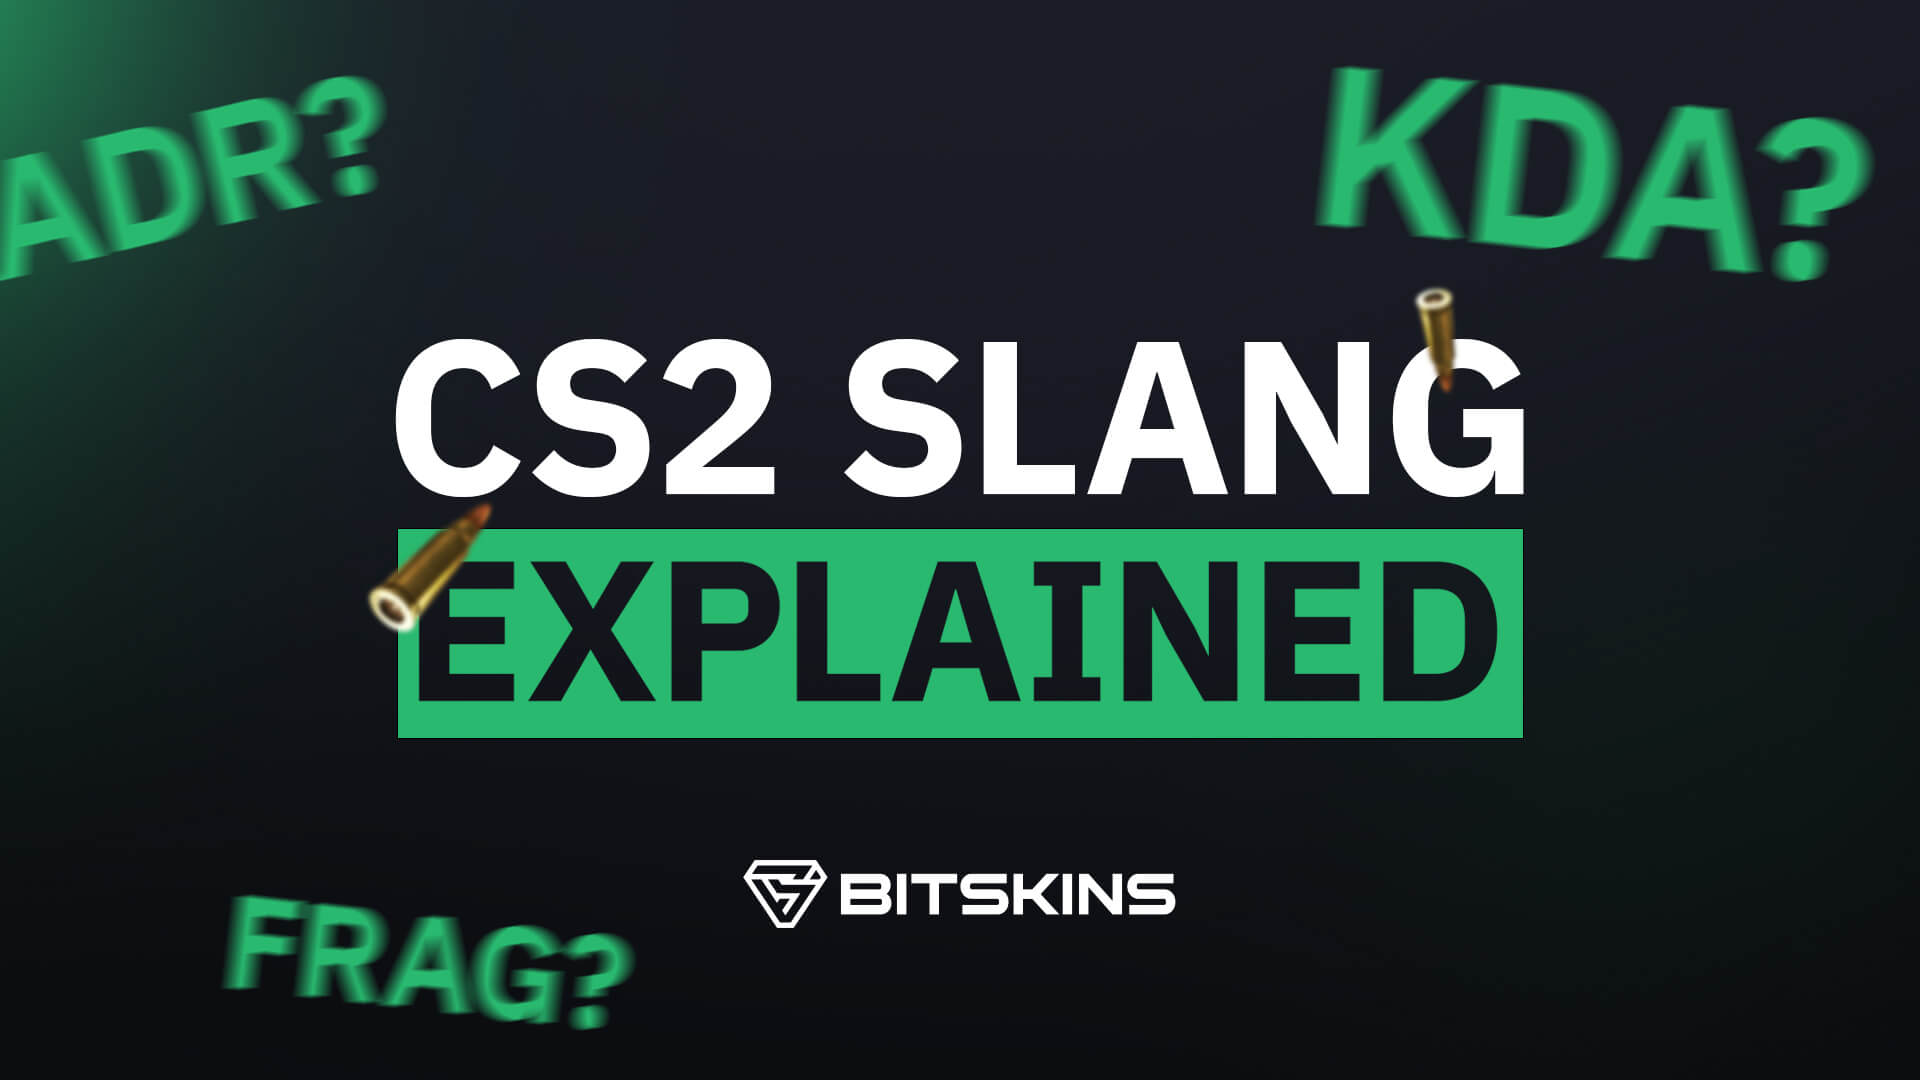 CS2 Slang Explained: What is ADR/KDA/Frag?